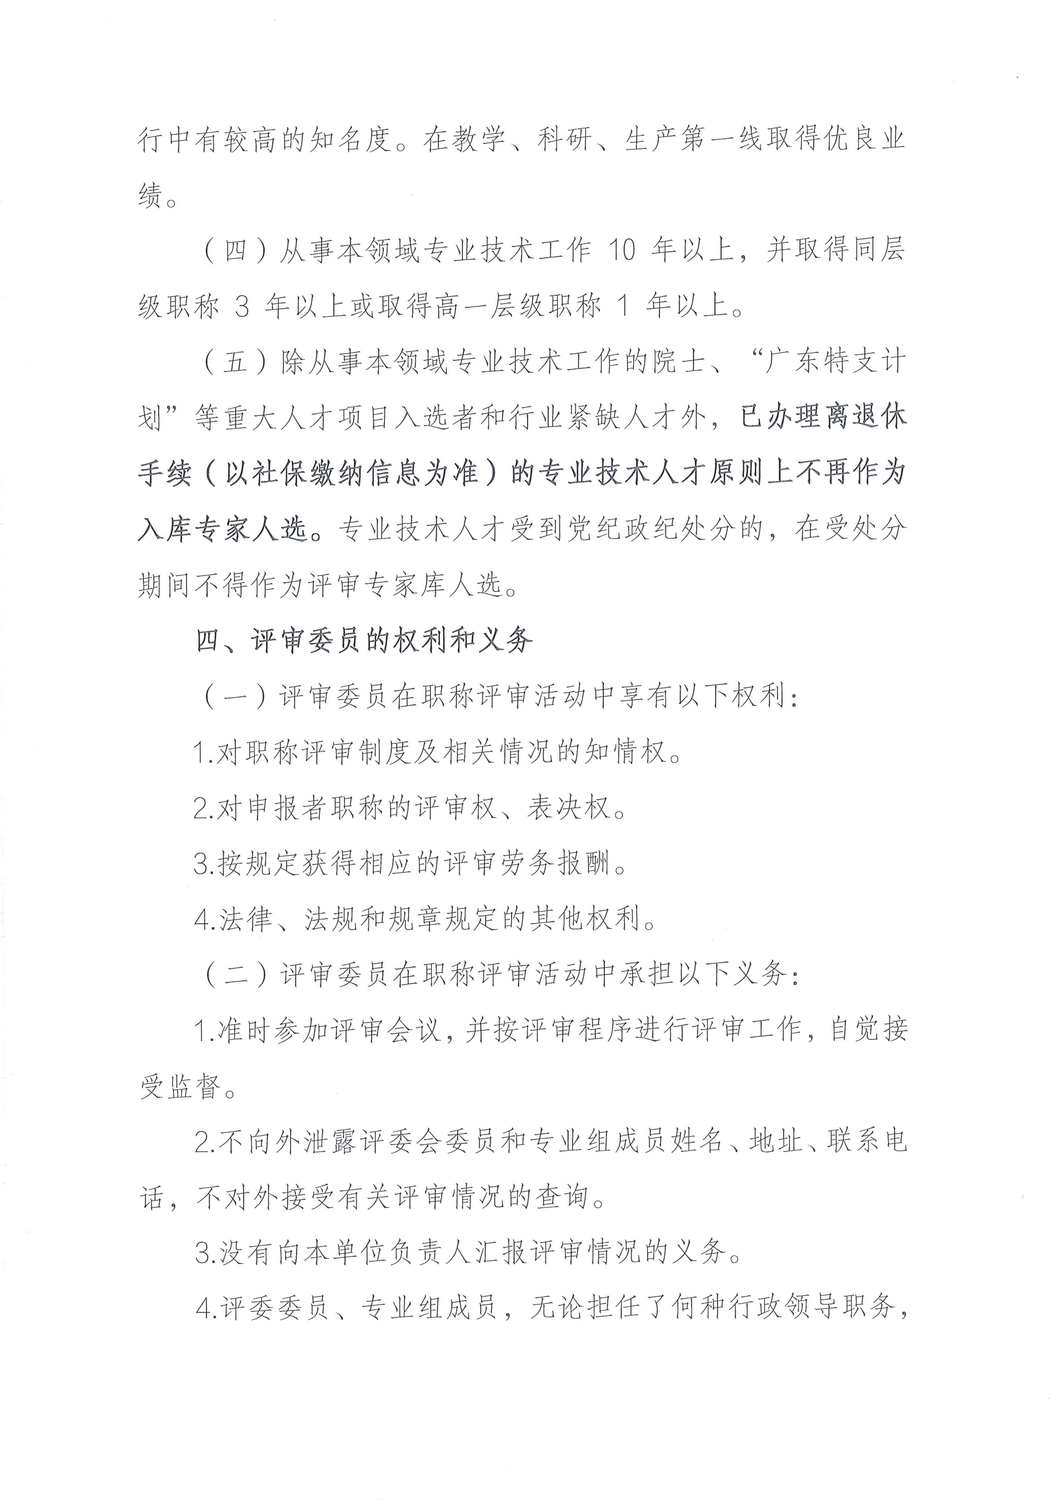 关于征集深圳市控制工程专业高级职称评审委员会评委的公告_01.png